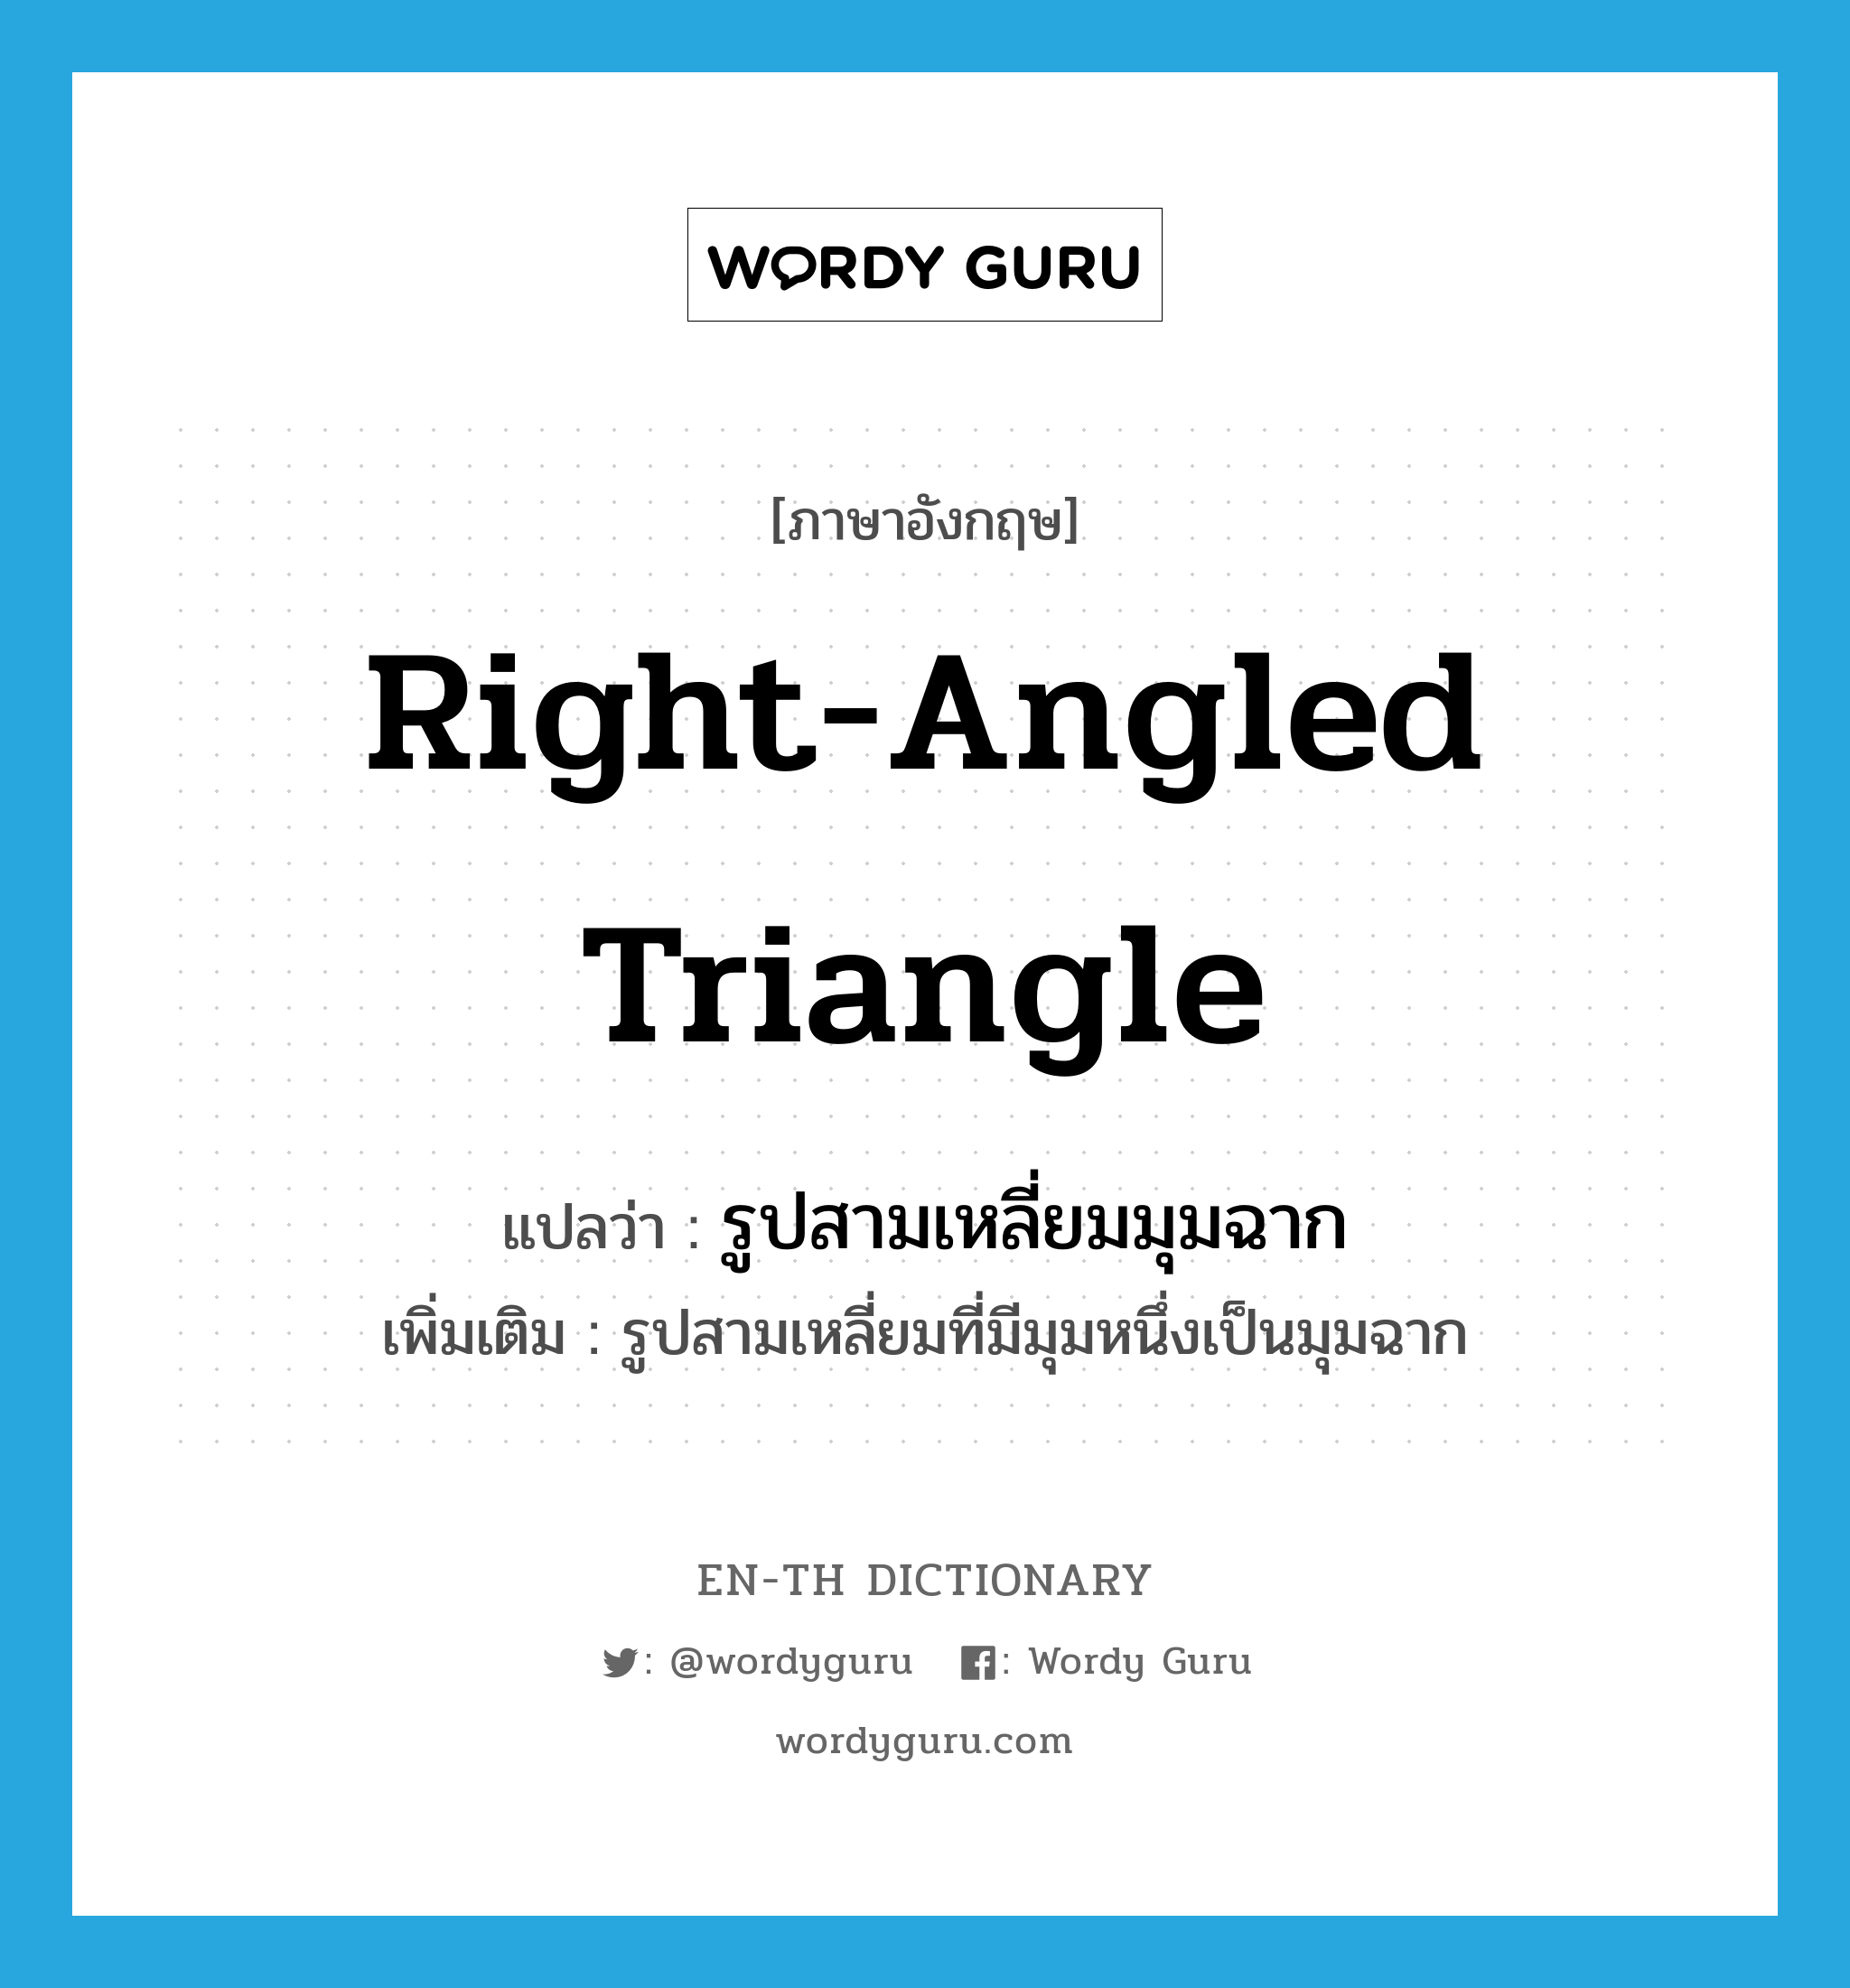 right-angled triangle แปลว่า?, คำศัพท์ภาษาอังกฤษ right-angled triangle แปลว่า รูปสามเหลี่ยมมุมฉาก ประเภท N เพิ่มเติม รูปสามเหลี่ยมที่มีมุมหนึ่งเป็นมุมฉาก หมวด N